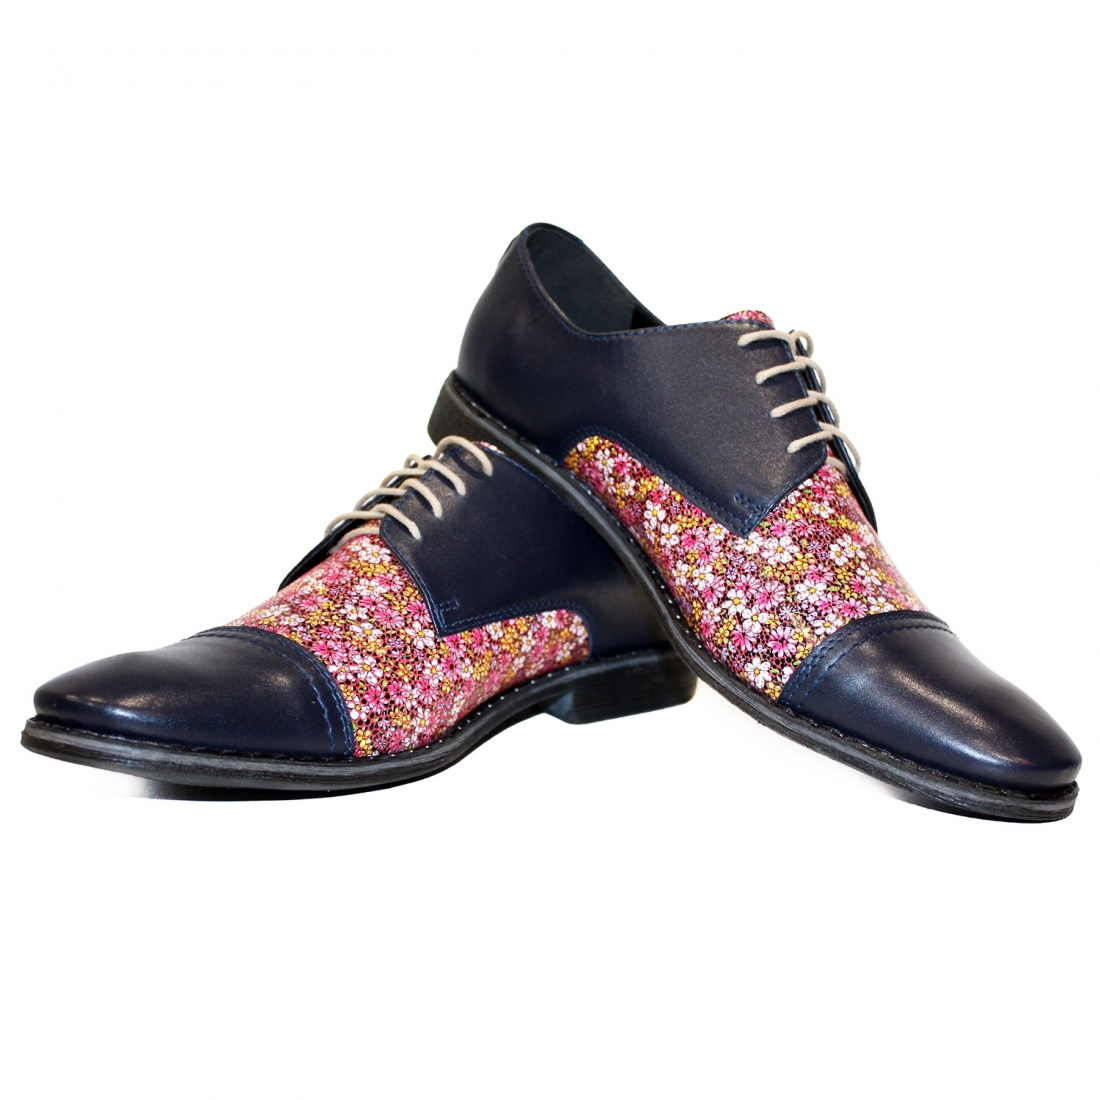 Modello Vacanzzo - Scarpe Classiche - Handmade Colorful Italian Leather Shoes